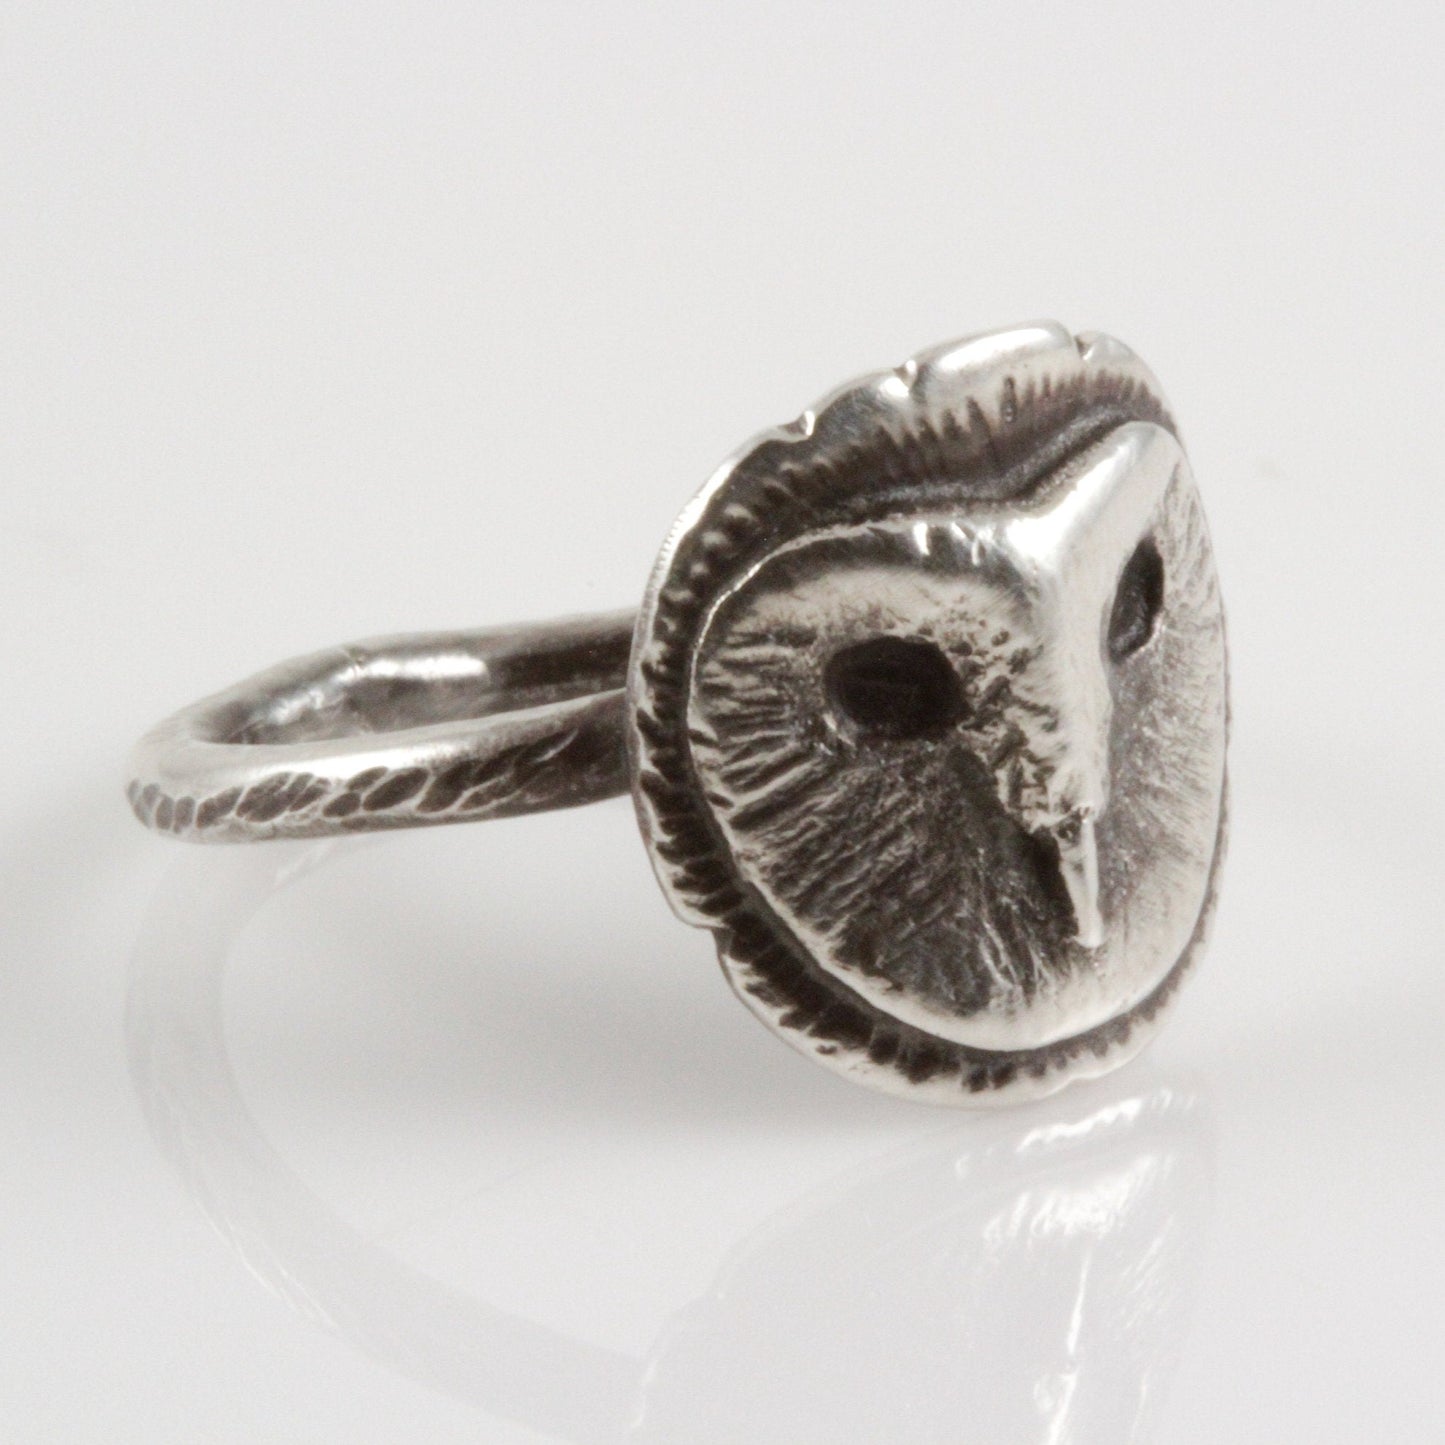 Barn Owl Ring